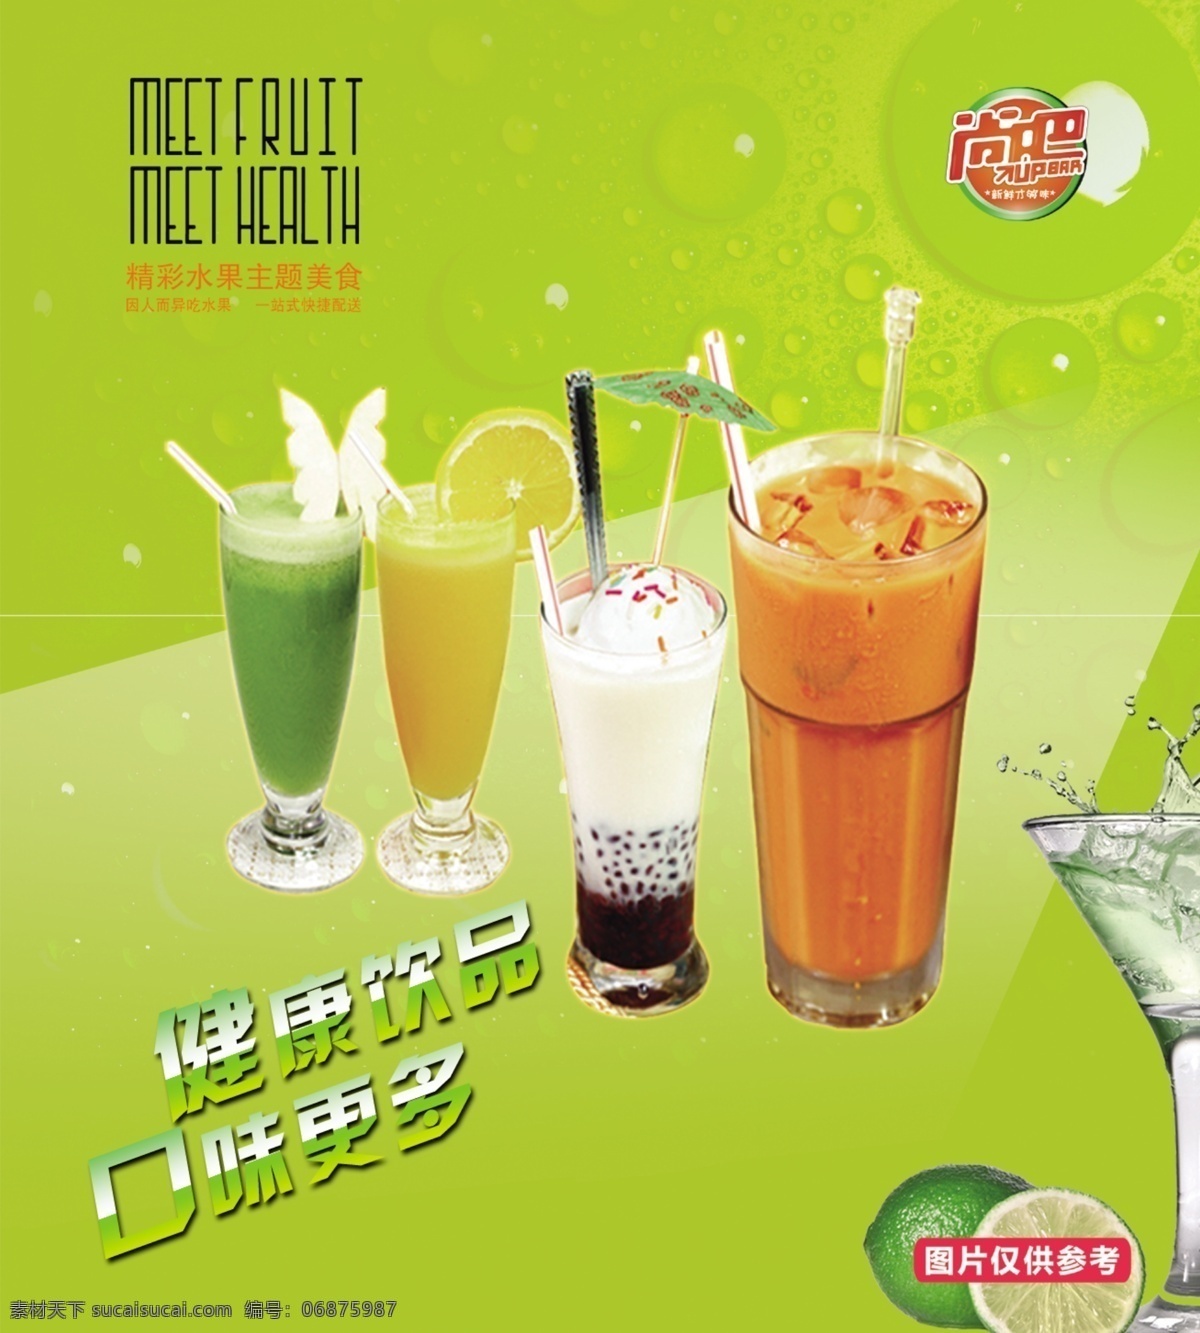 广告设计模板 果汁 绿色背景 饮料 饮料图片 源文件 宣传海报 模板下载 果汁宣传海报 健康饮品 品味更多 尚吧果汁 psd源文件 餐饮素材